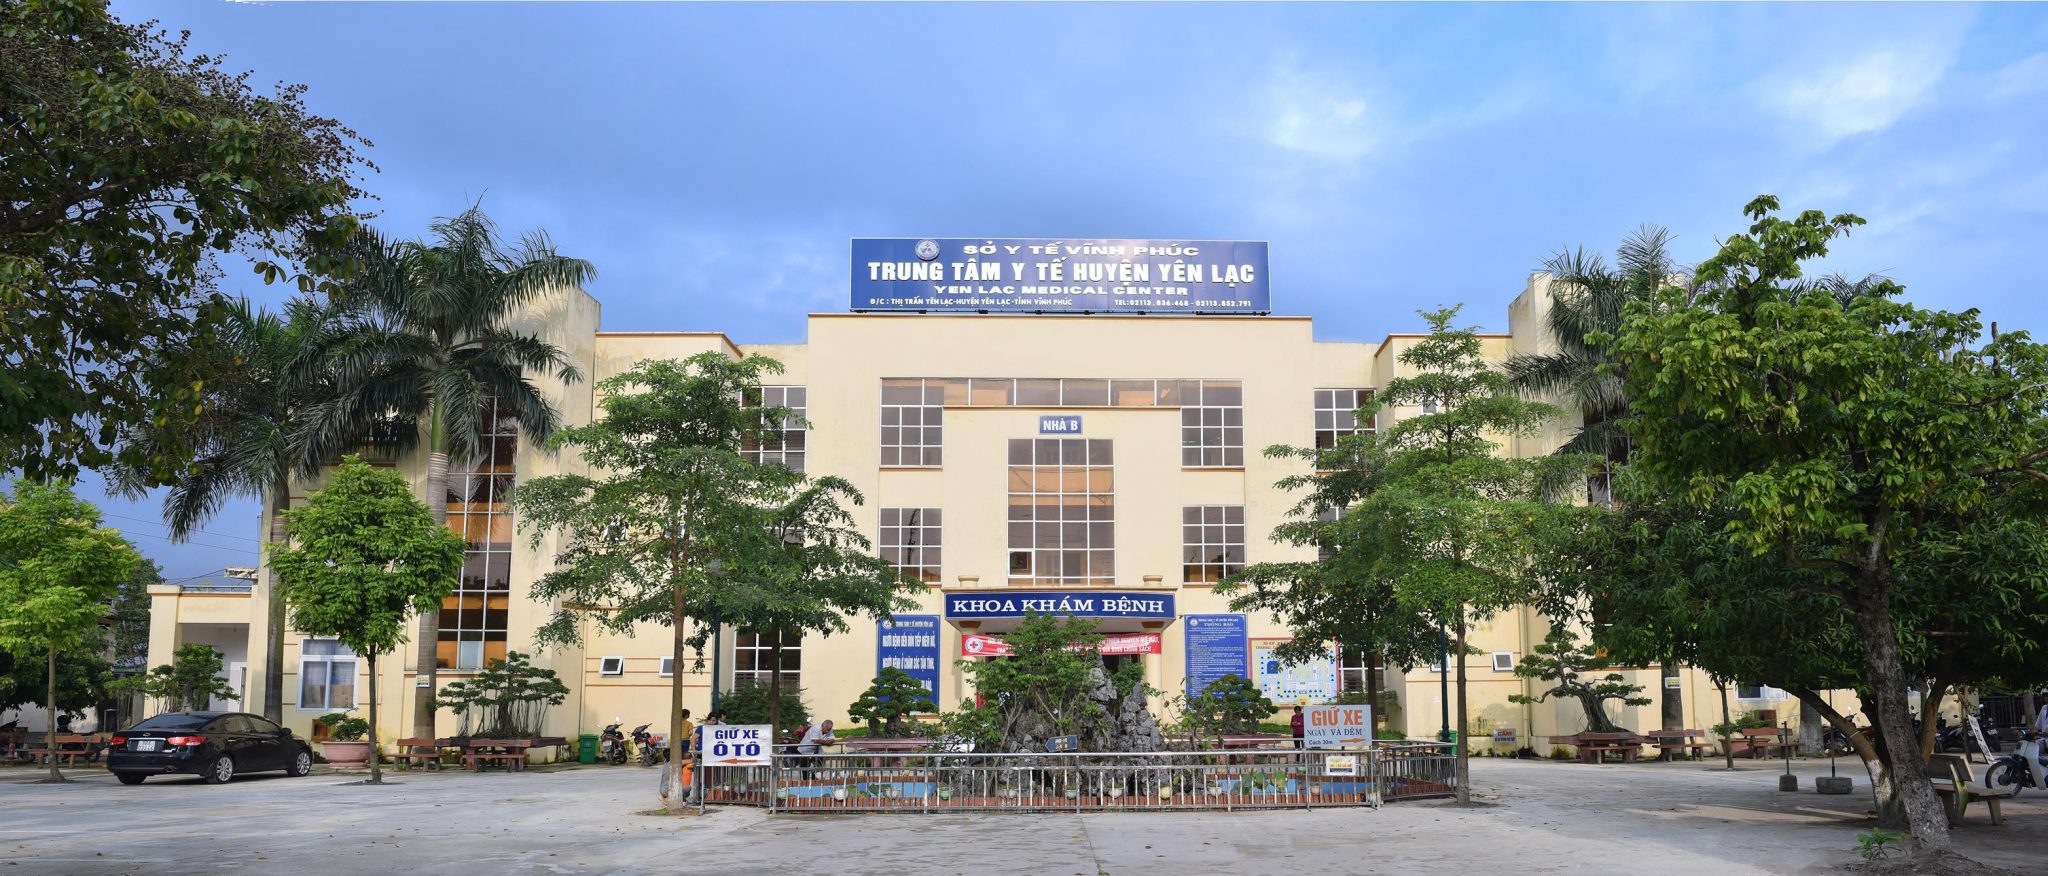 Lắp Đặt Âm Thanh Hội Trường Cho Trung Tâm Y Tế Huyện Yên Lạc - Vĩnh Phúc 